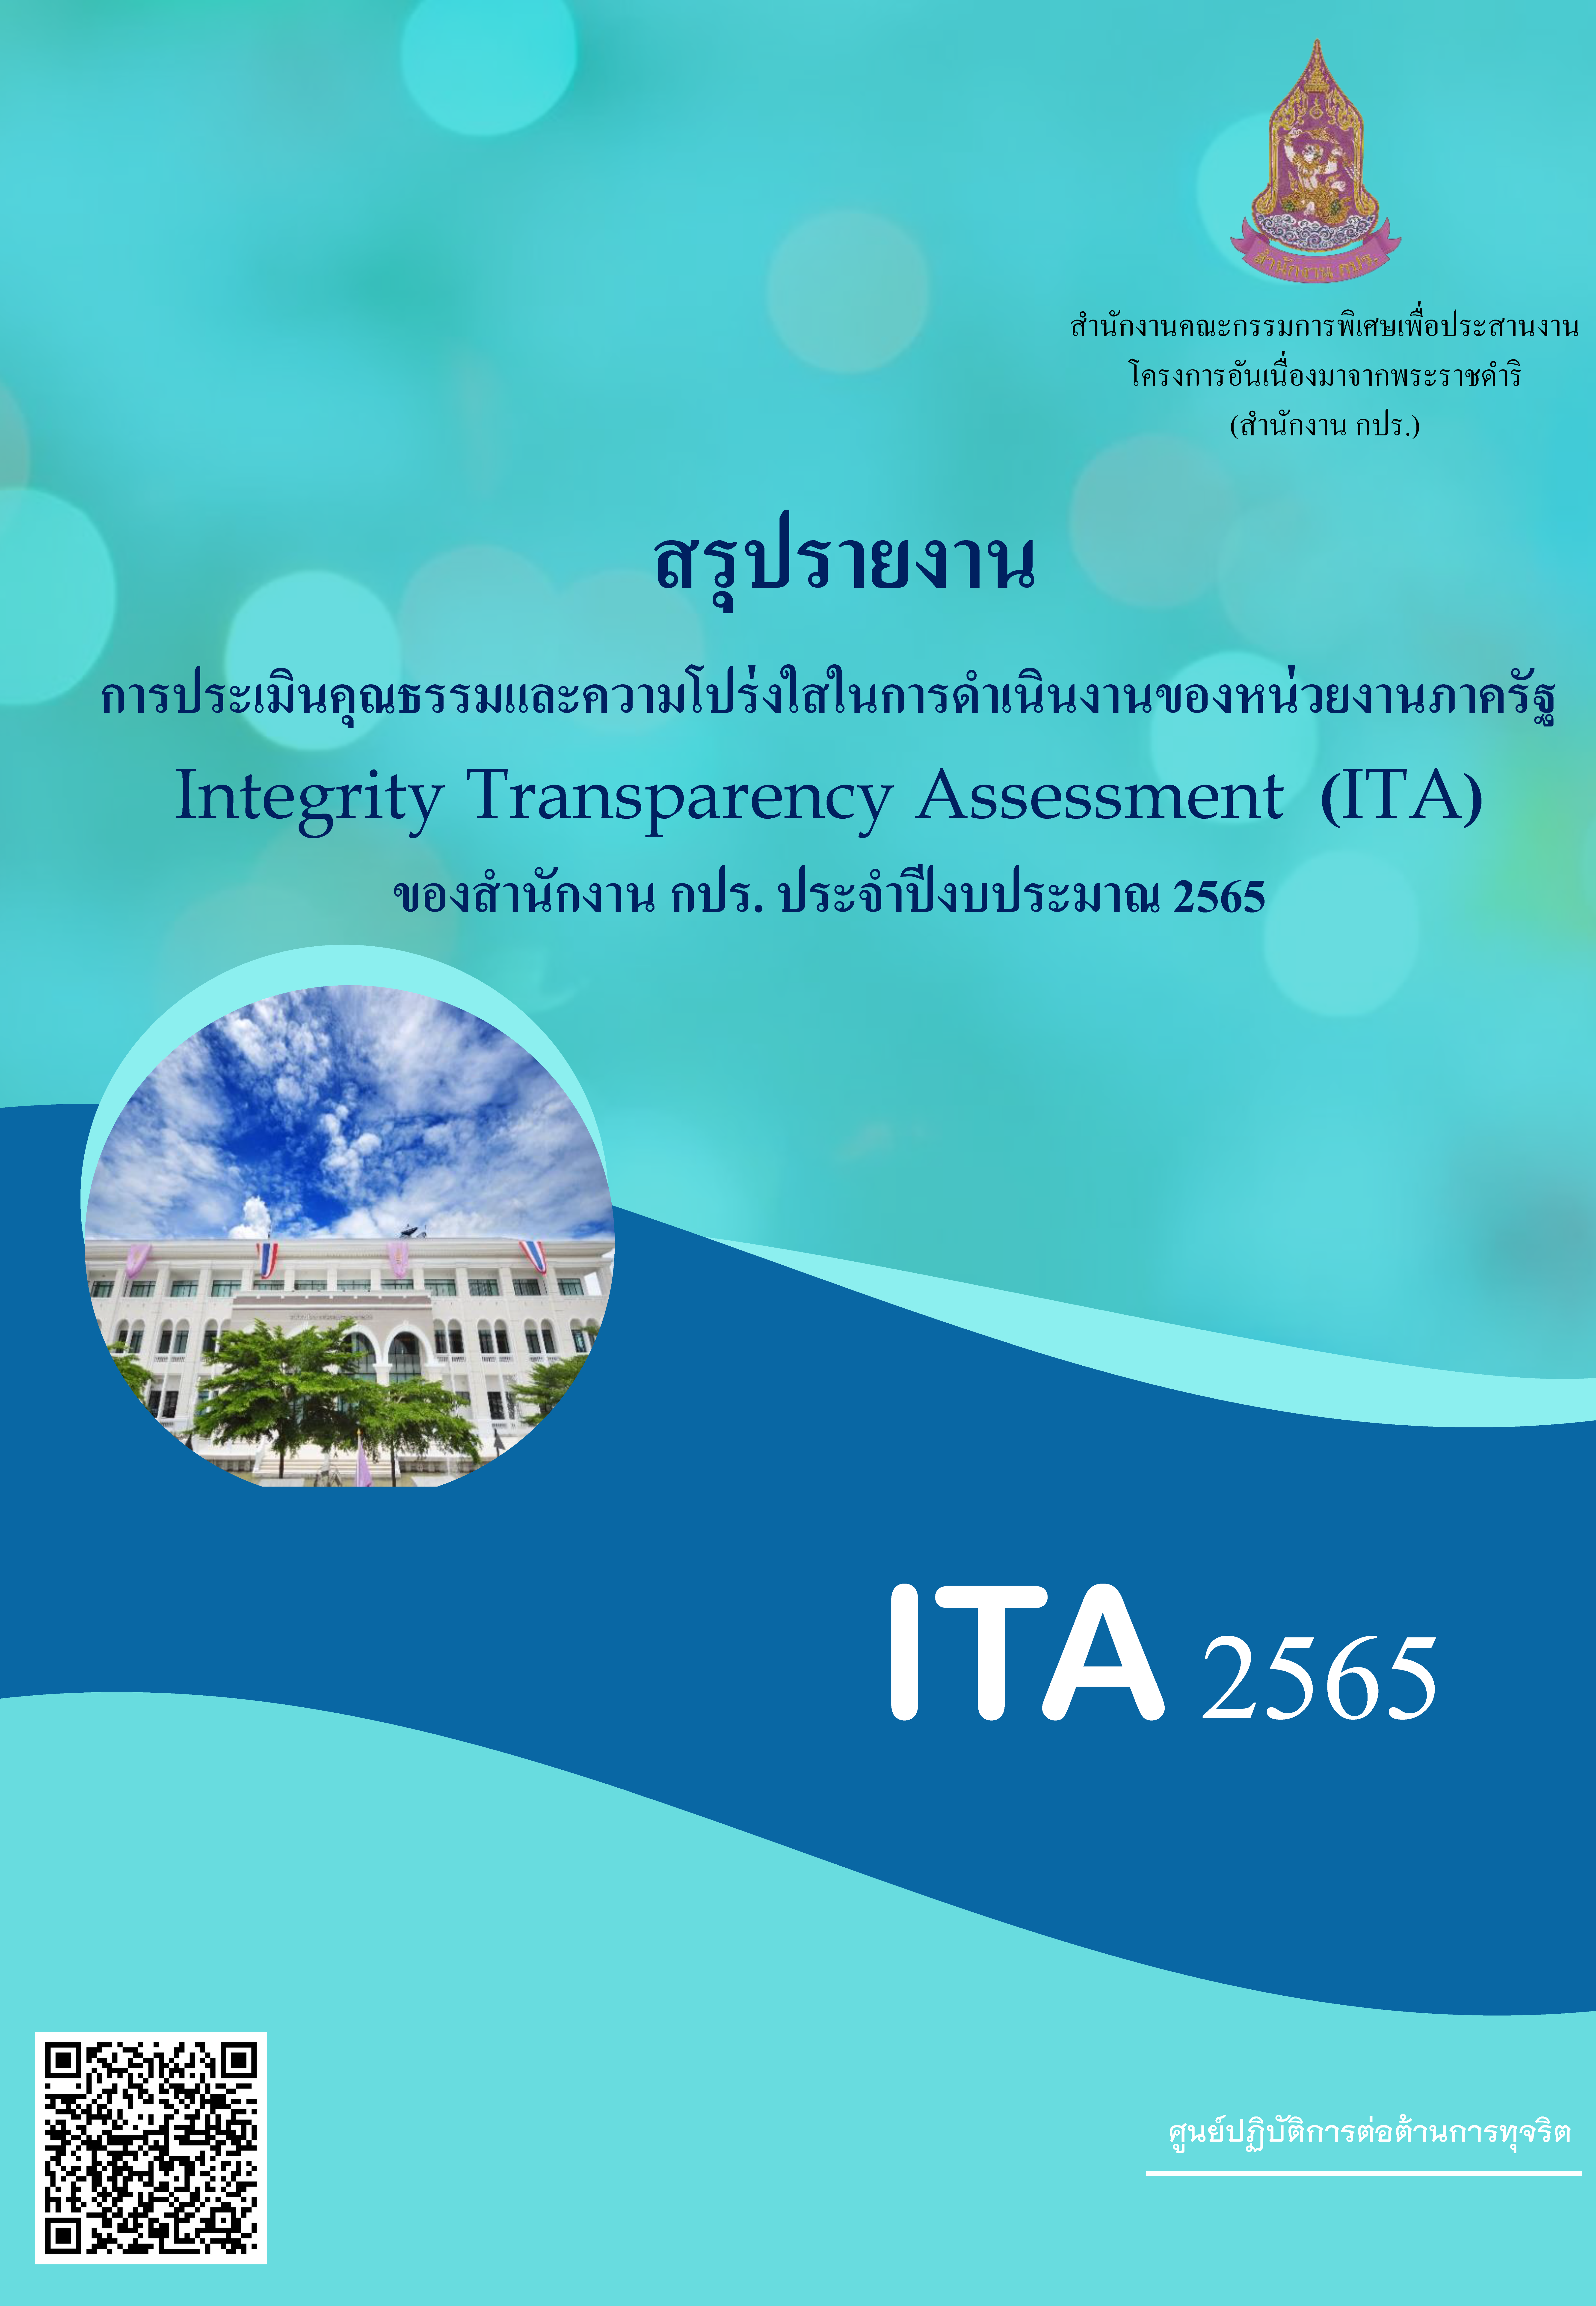 สรุปรายงานการประเมิน  (ITA) ของสำนักงาน กปร. ประจำปีงบประมาณ 2565